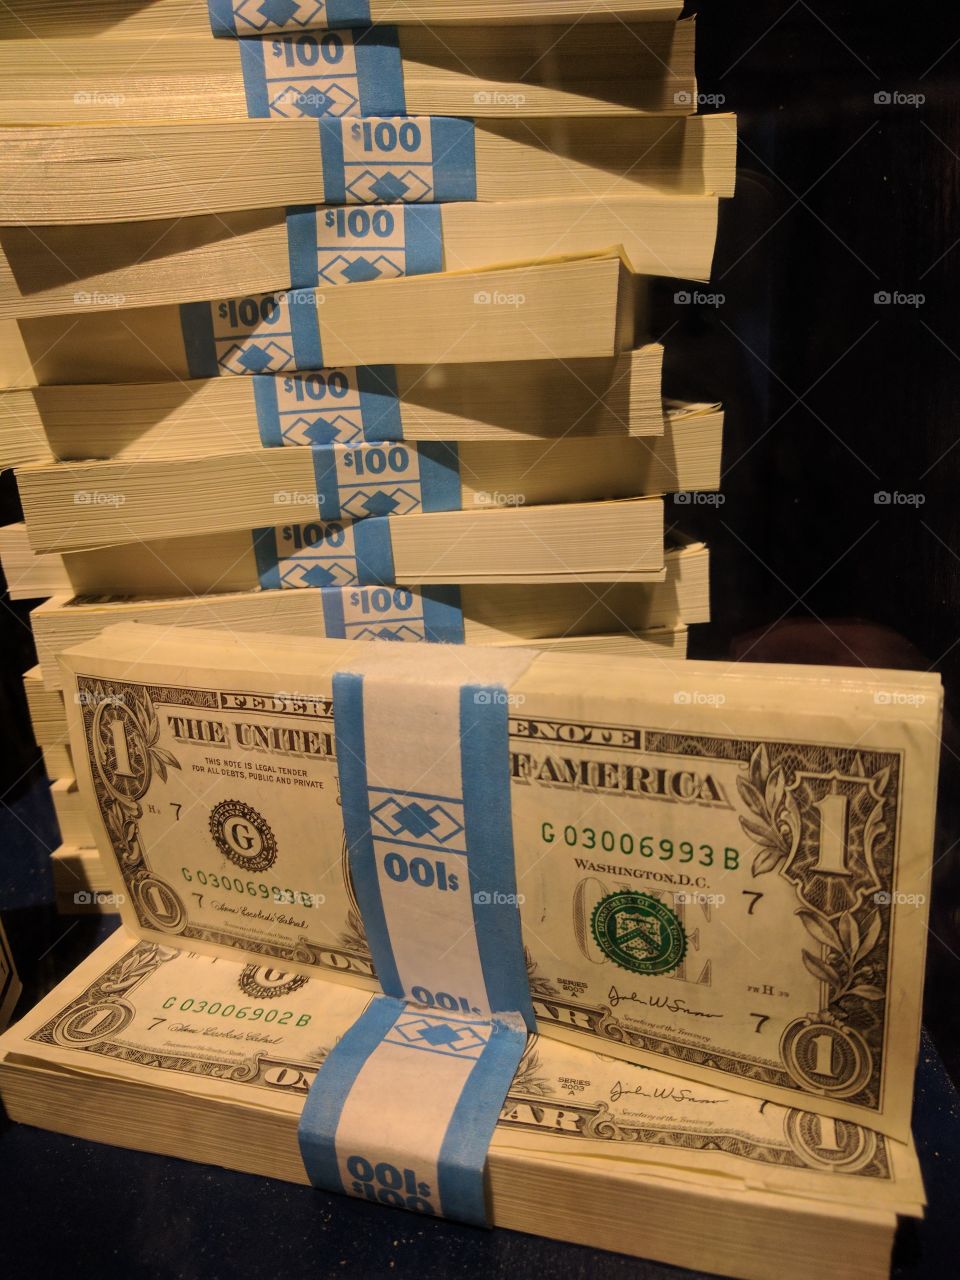 A nice stash of cash.